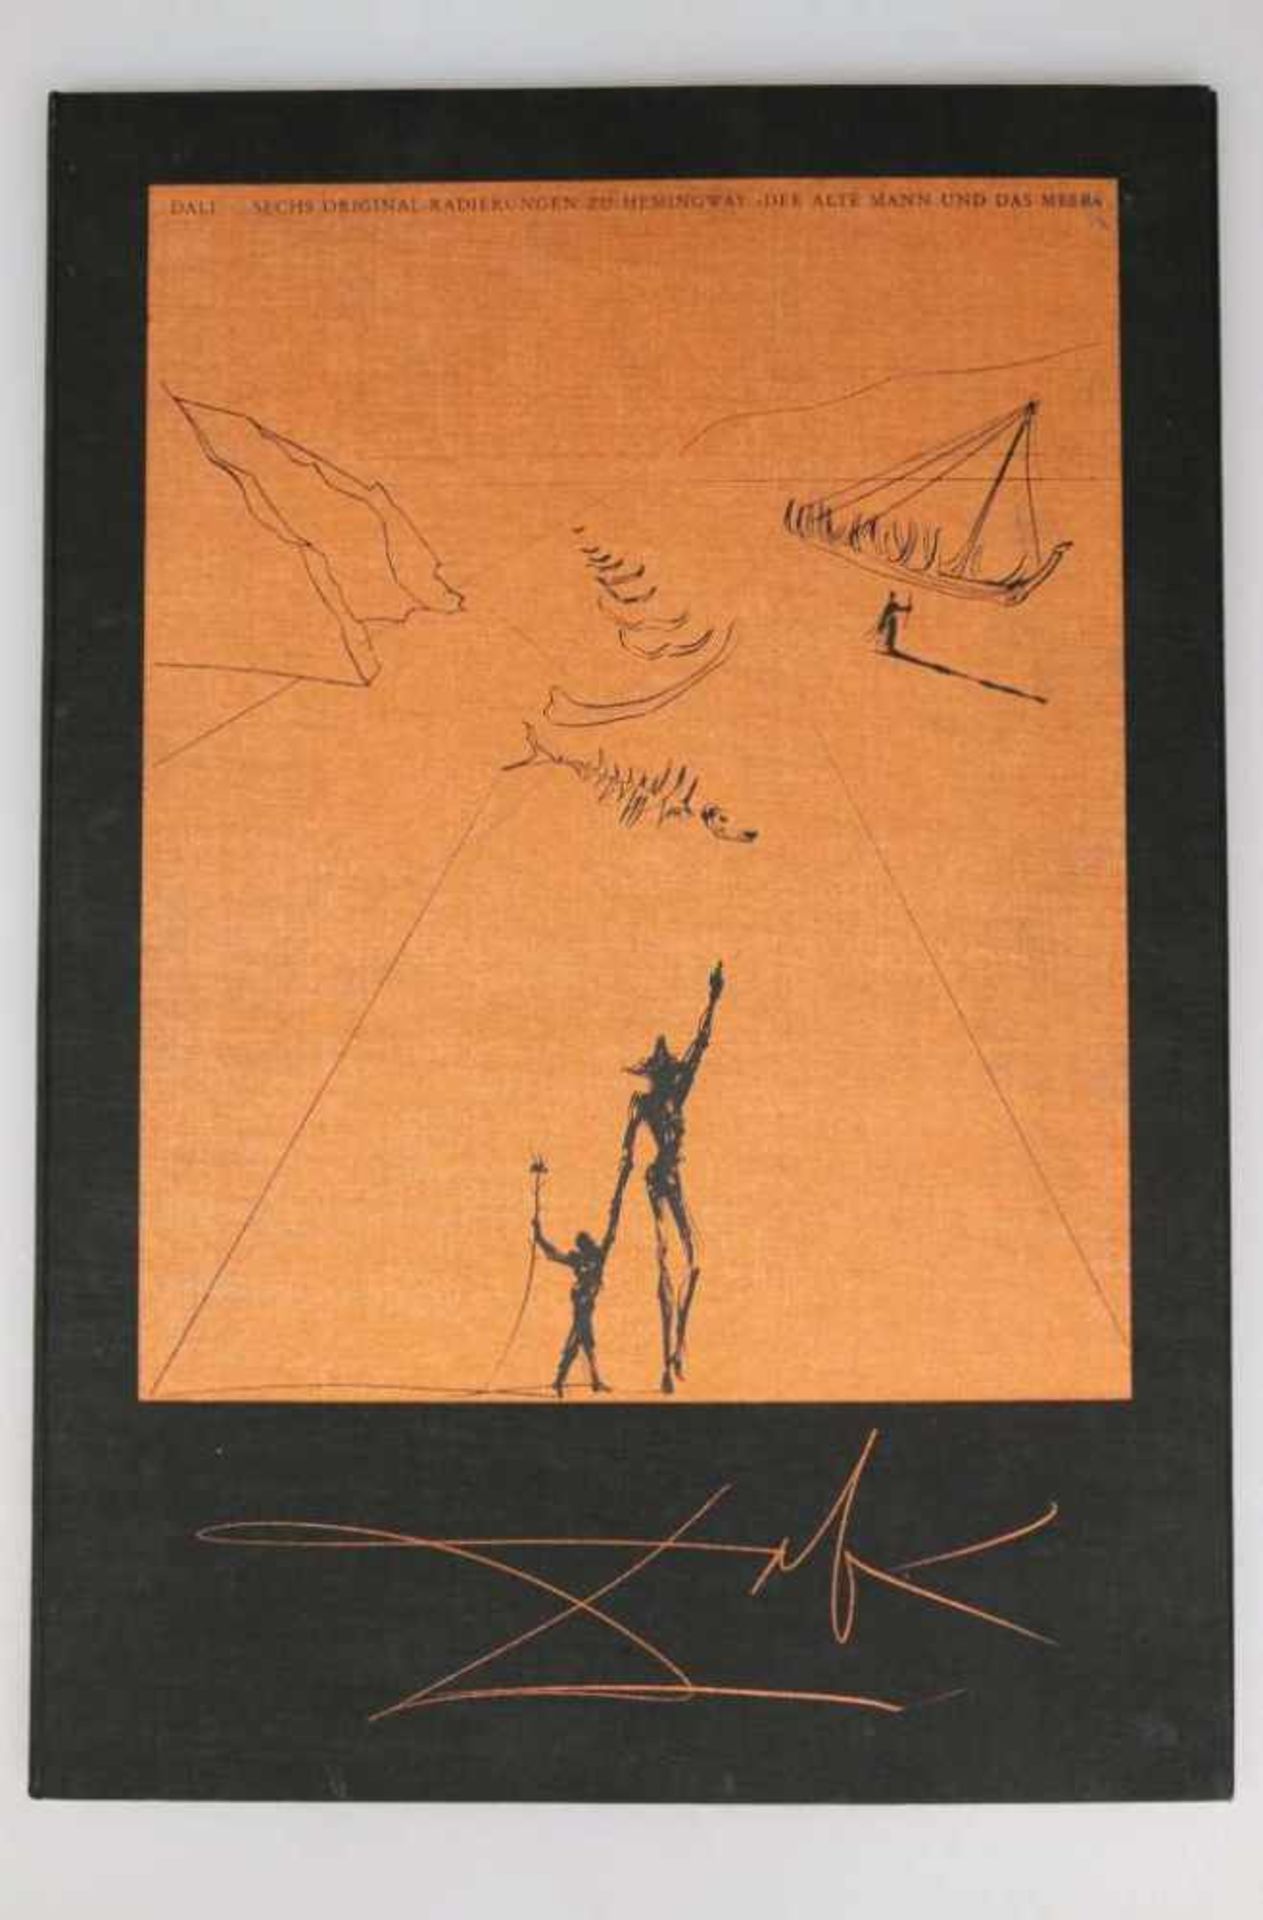 Salvador DALI (1904-1989),"Der alte Mann und das Meer", 1974. Folge von sechs Radierungen, alle in